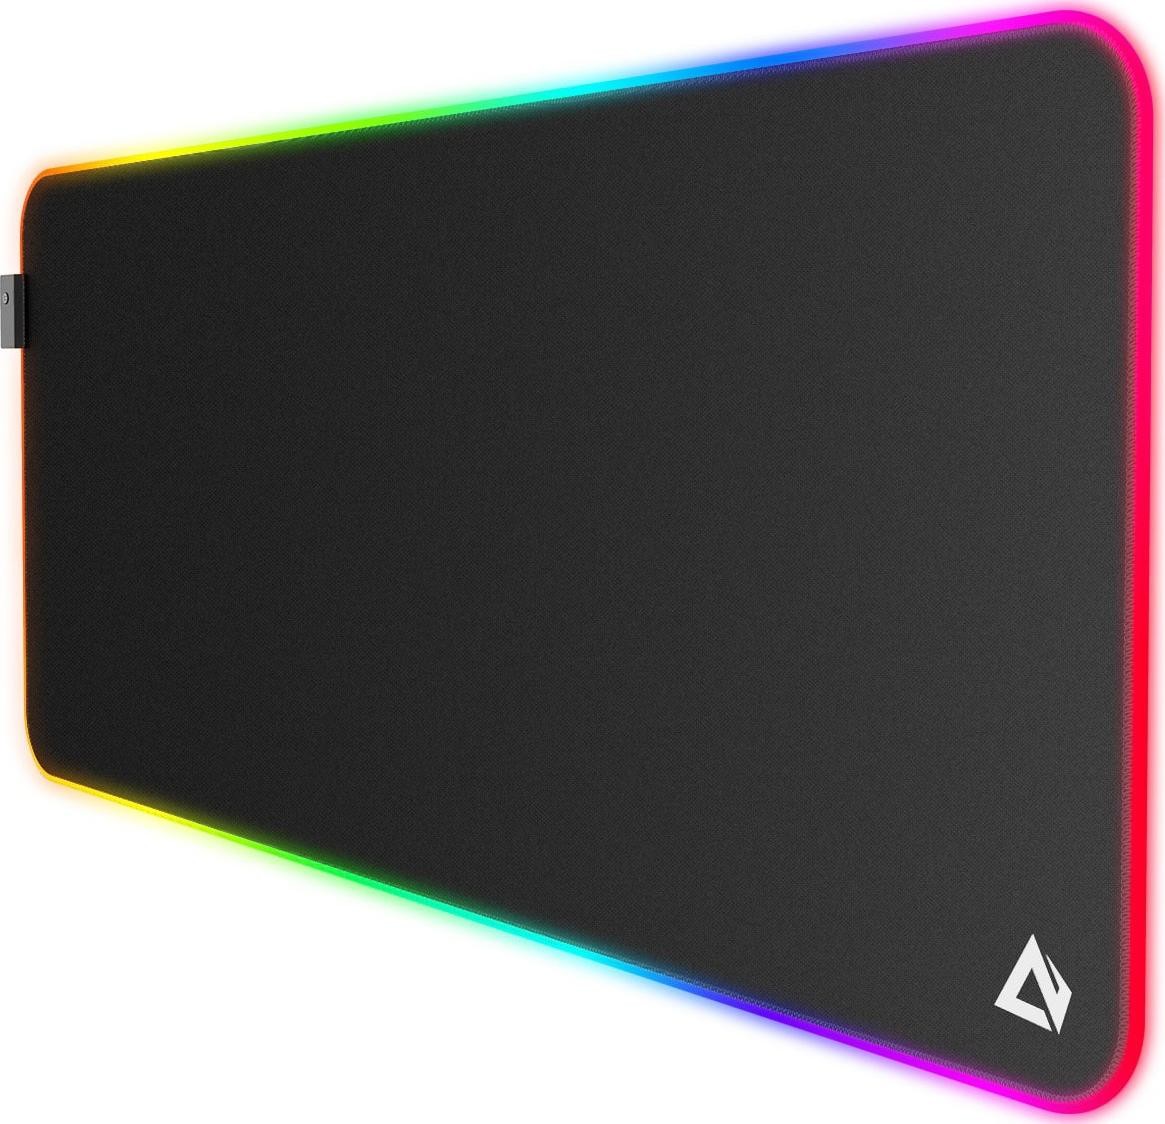 Aukey Podkładka  KM-P7 RGB XXL gamingowa podkładka pod mysz i klawiaturę | 900x400x4mm | wodoodporna | gumowany spód | aplikacja G-aim Control Center KM-P7 RGB